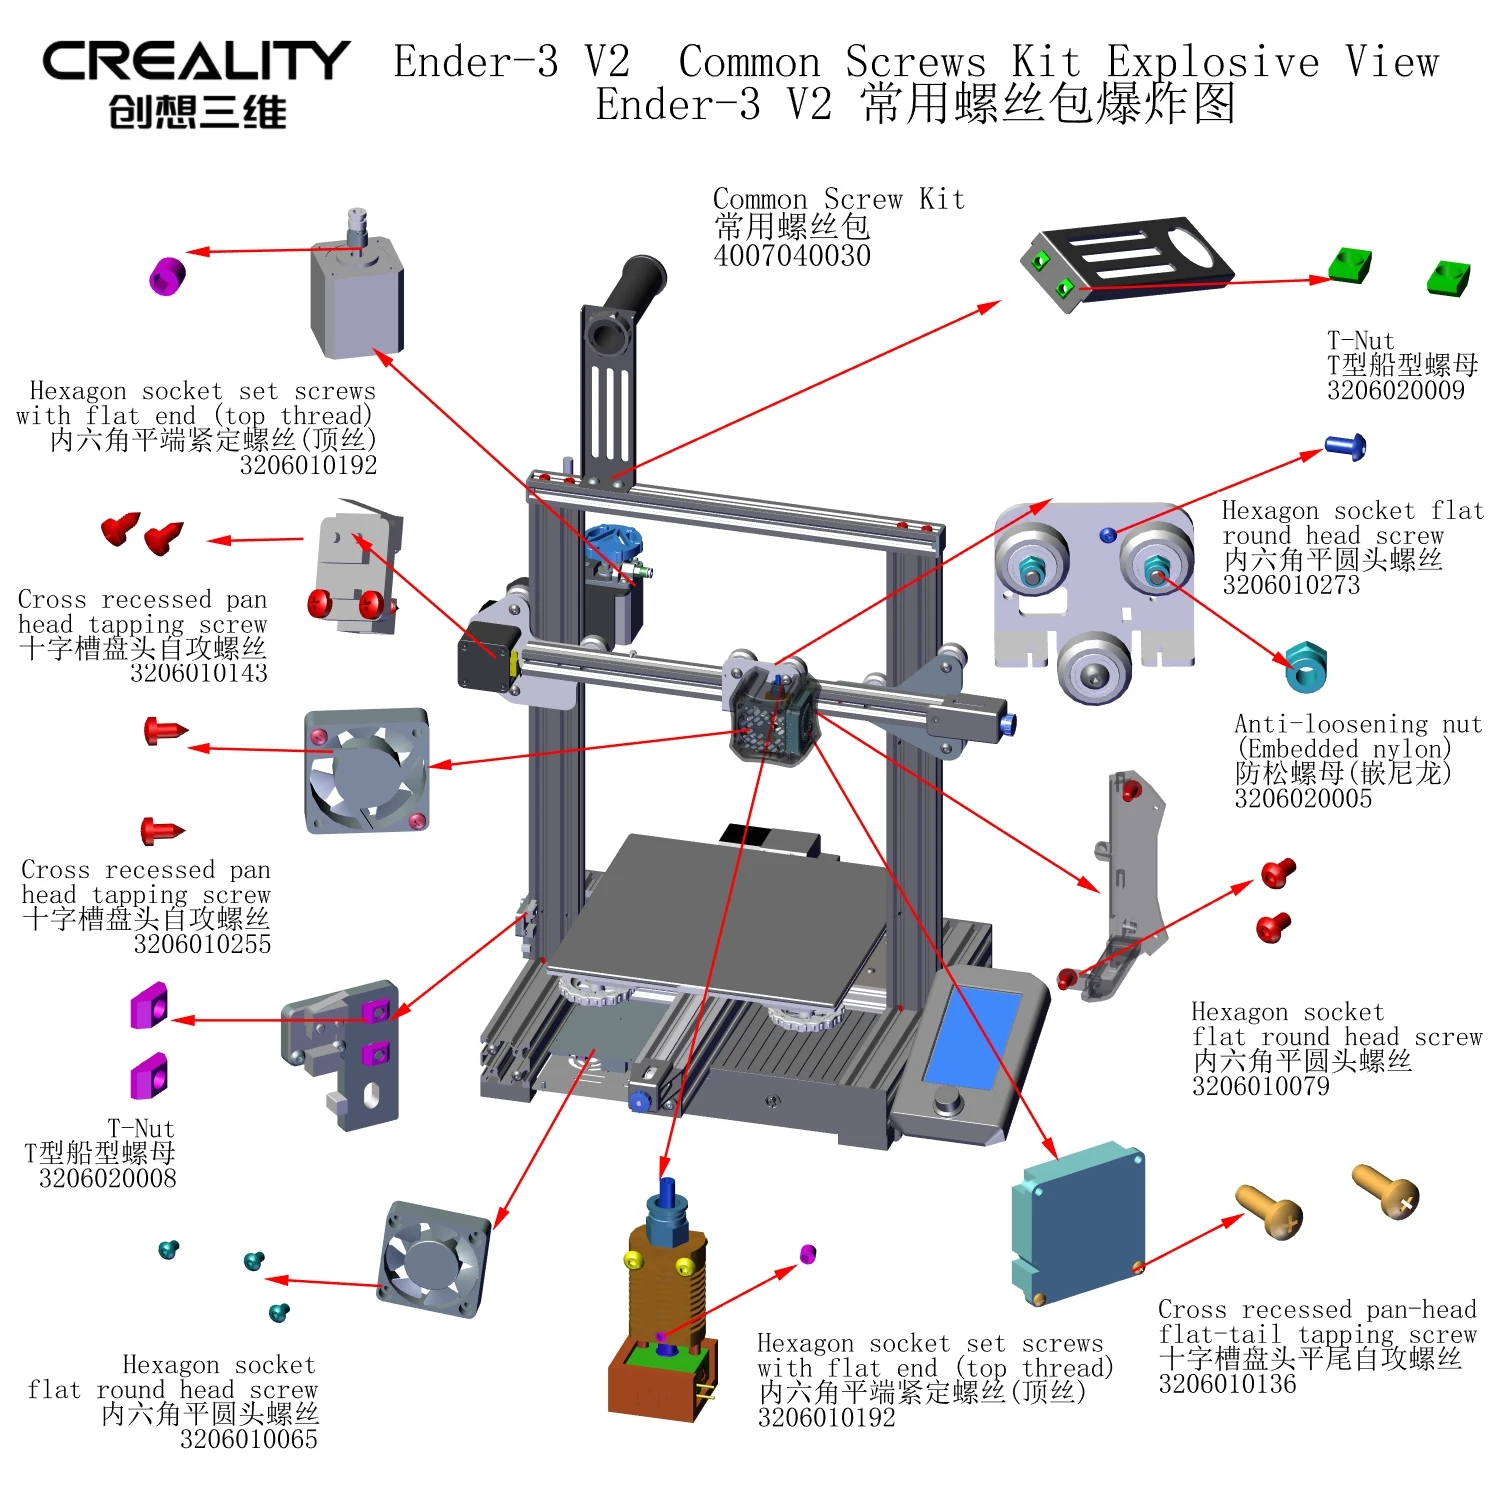 המשותף בורג ערכת נפוץ לובש ברגים Creality מדפסת 3D. החלק אנדר-3 V2 - 2